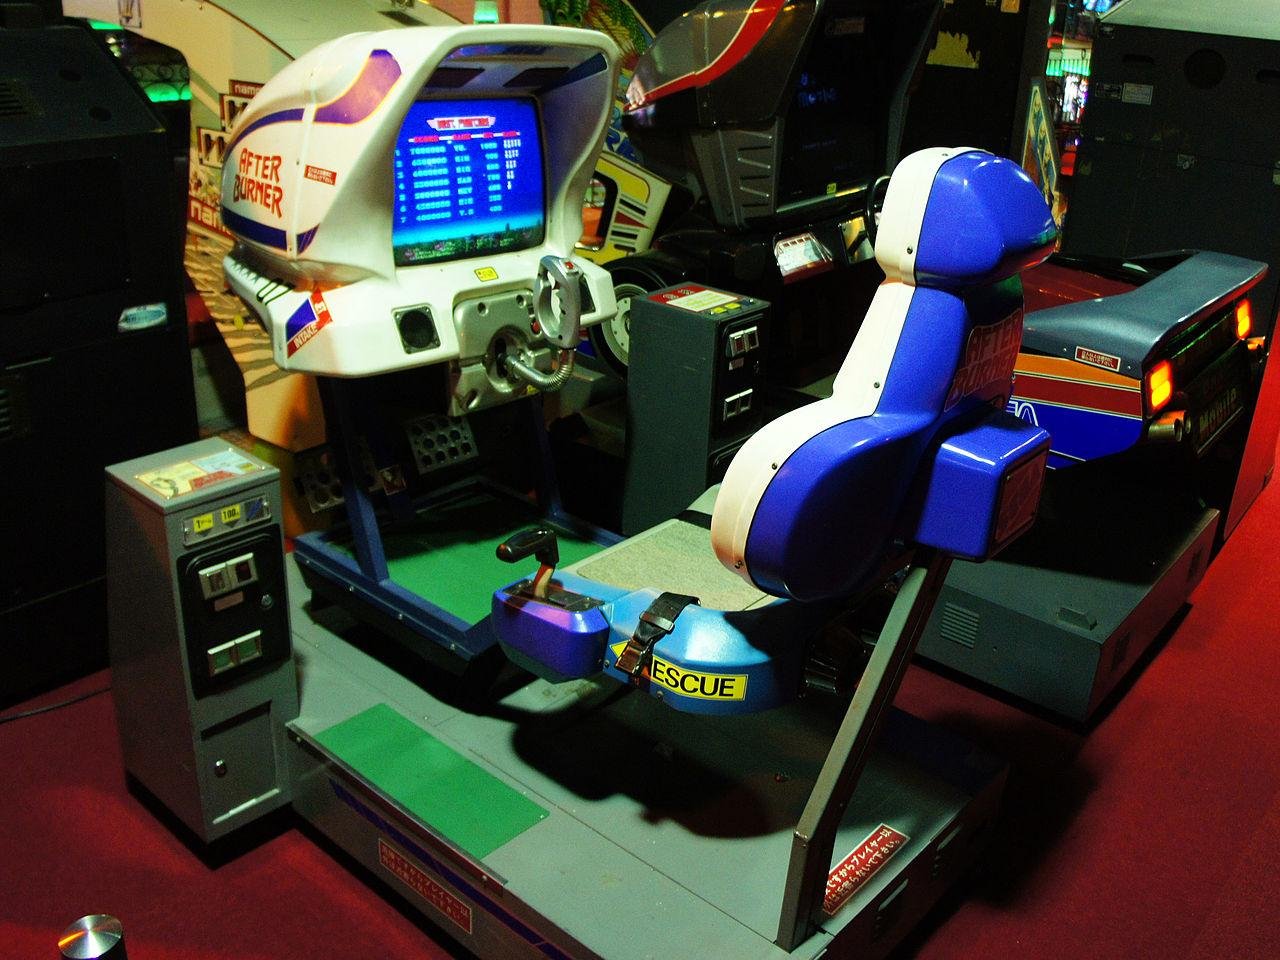 Site reúne mais de 900 jogos clássicos de arcade para jogar no browser -  NerdBunker